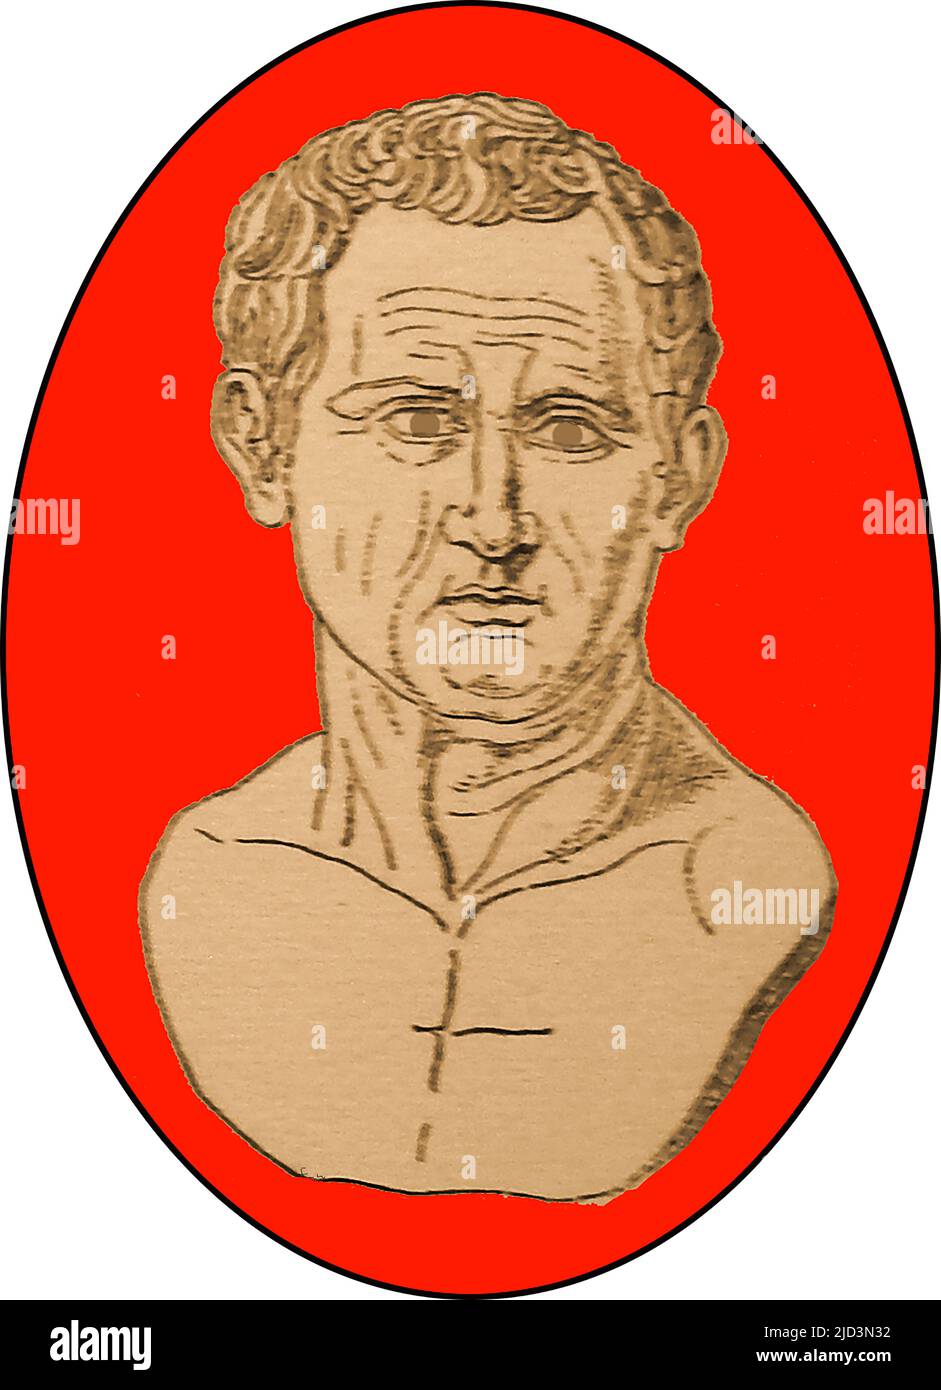 Un primo ritratto di Marcus Tullius Cicero (106 a.C. – 7 43 a.C.) da giovane. Era uno statista romano, avvocato, oratore, accademico, scrittore latino, studioso, autore, filosofo e scettico rinomato. Fu Console (63 a.C.) e Governatore di Cilicia (51–50 a.C.) ----- un primo rito di Marco Tullio Cicerone (106 a.C.) – 7 43 a.C.) da giovane. Era uno statista romano, avvocato, oratore, accademico, scrittore latino, studio, autore, filosoco e rinomato scettico. Servì come console (63 a.C.) e governatore della Cilicia (51-50 a.C.) Foto Stock